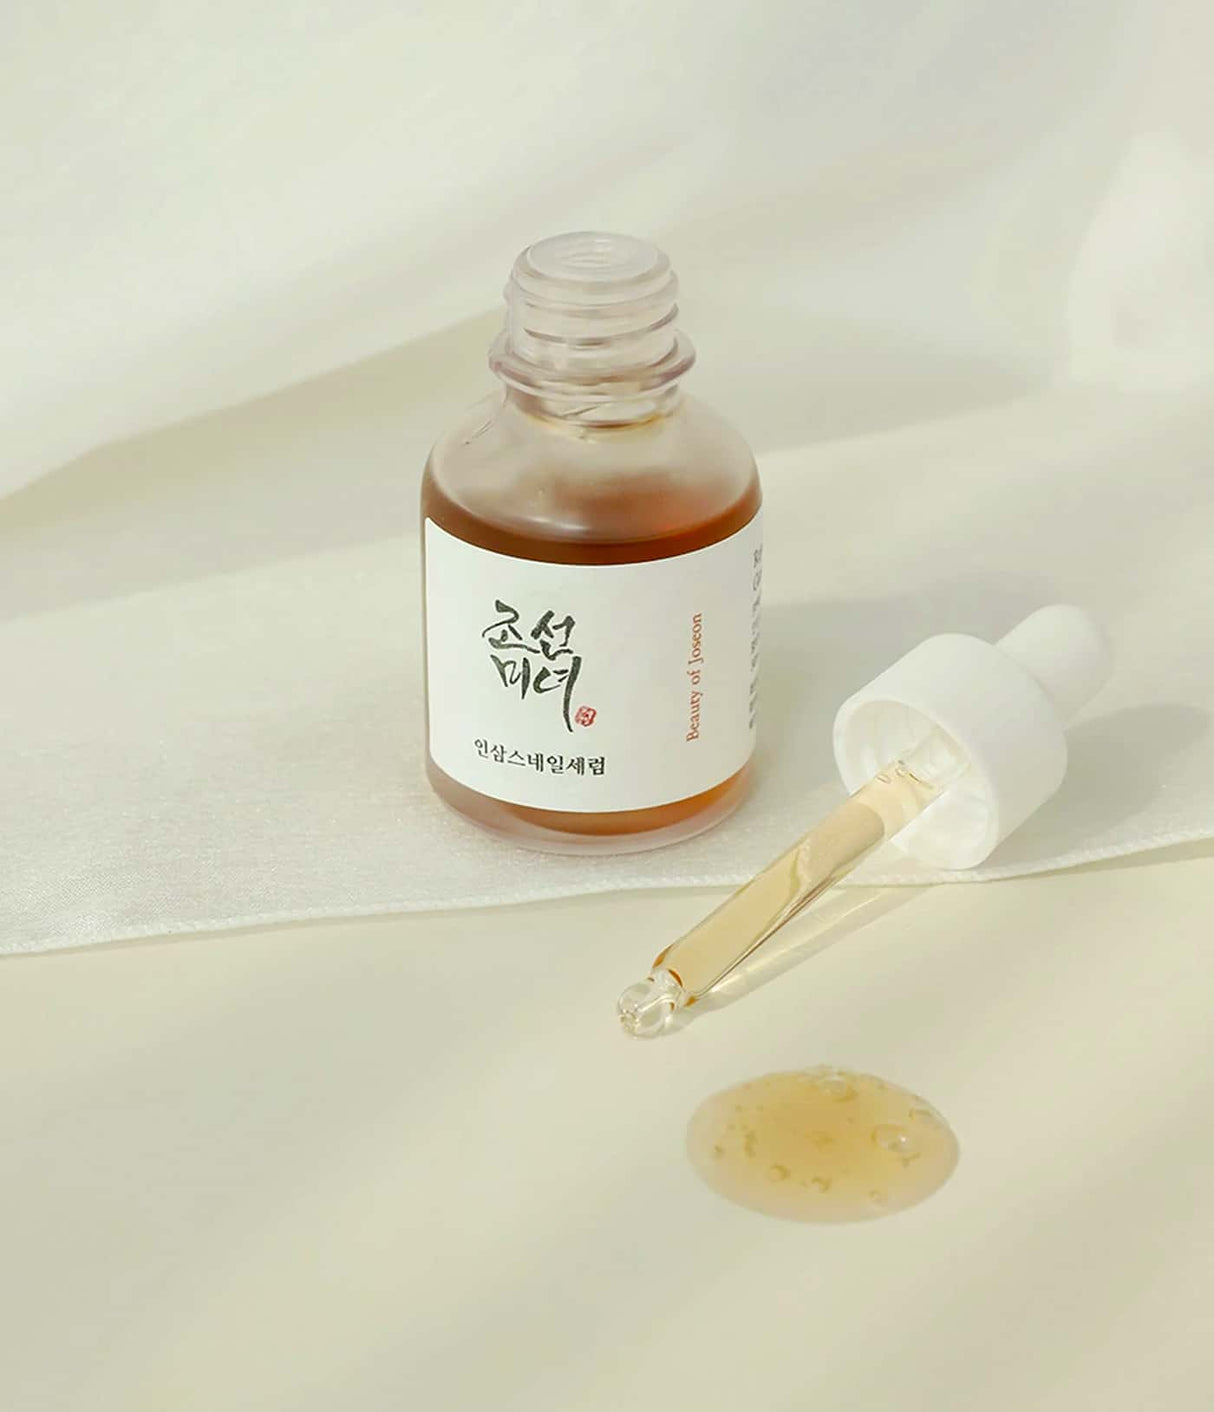 Revive Serum Ginseng + Snail Mucin de Beauty of Joseon